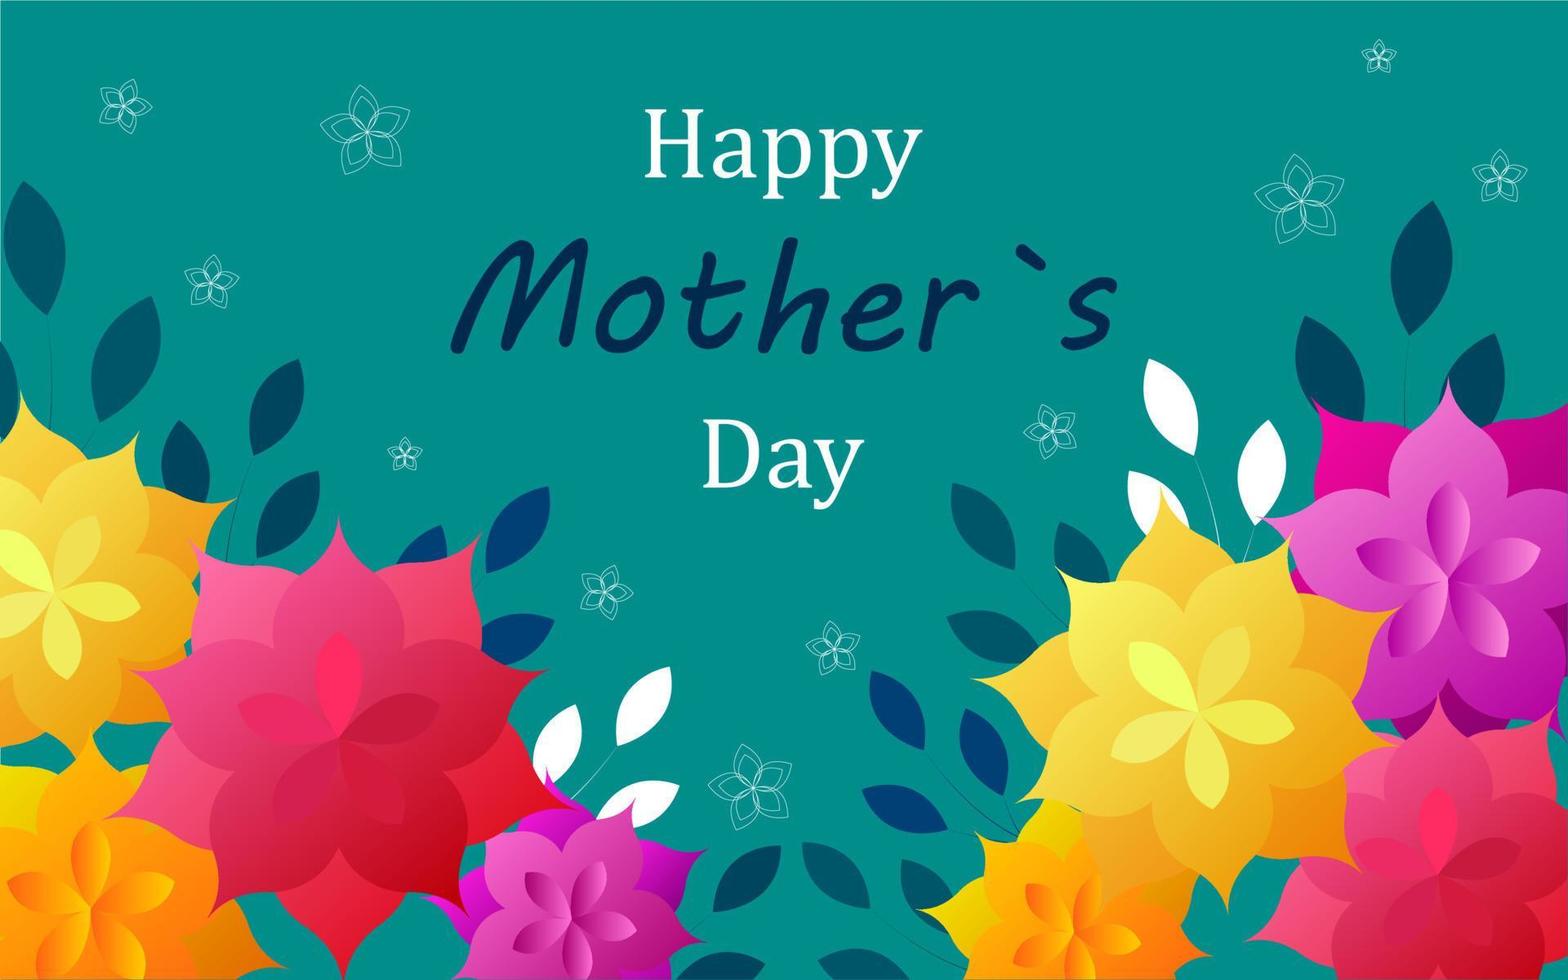 moderne heldere illustratie van gelukkige moederdag met papieren bloemen en belettering. ontwerp voor banner, ticket, advertentie, brochure. vector illustratie